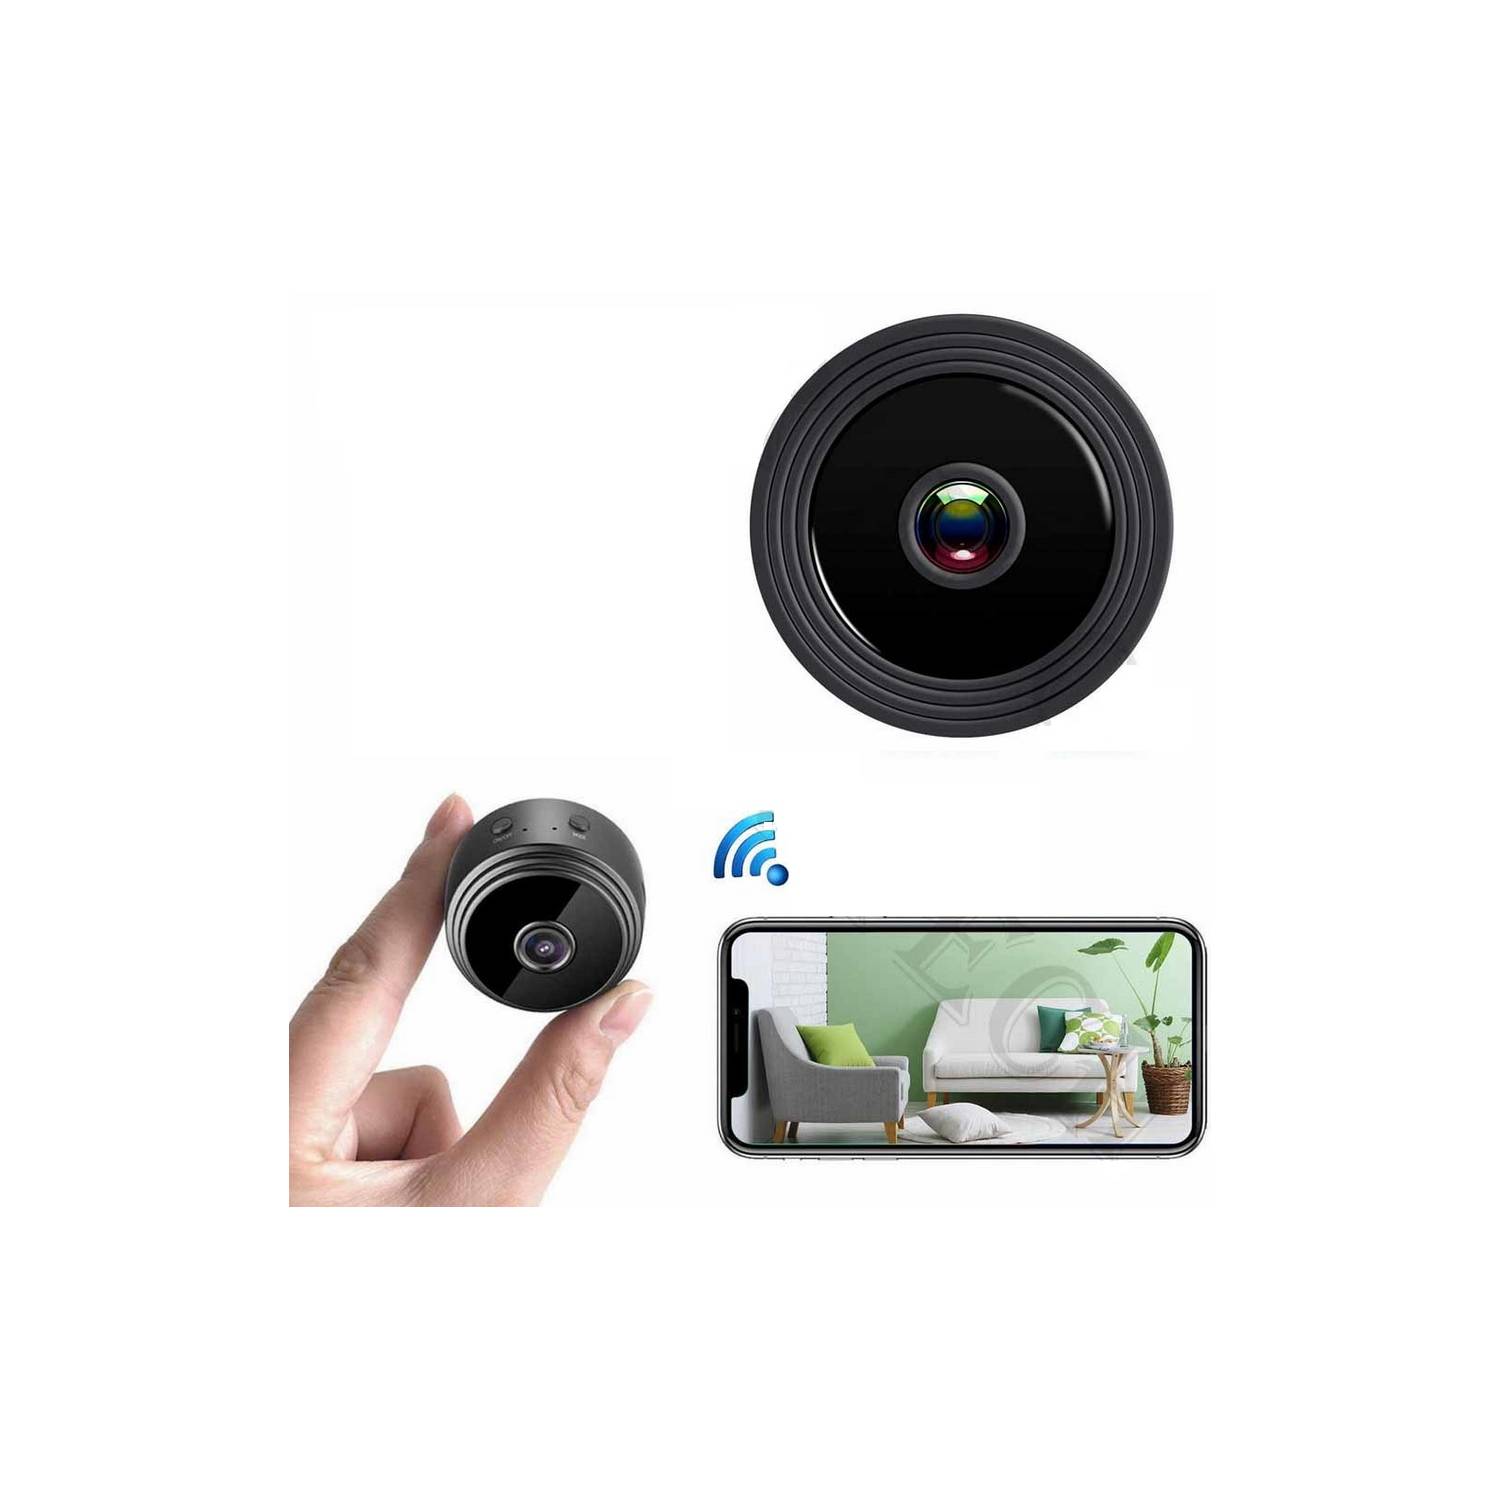 Camara Seguridad Mini Espia Con Detector De Moviento Wifi! Color Negro A9